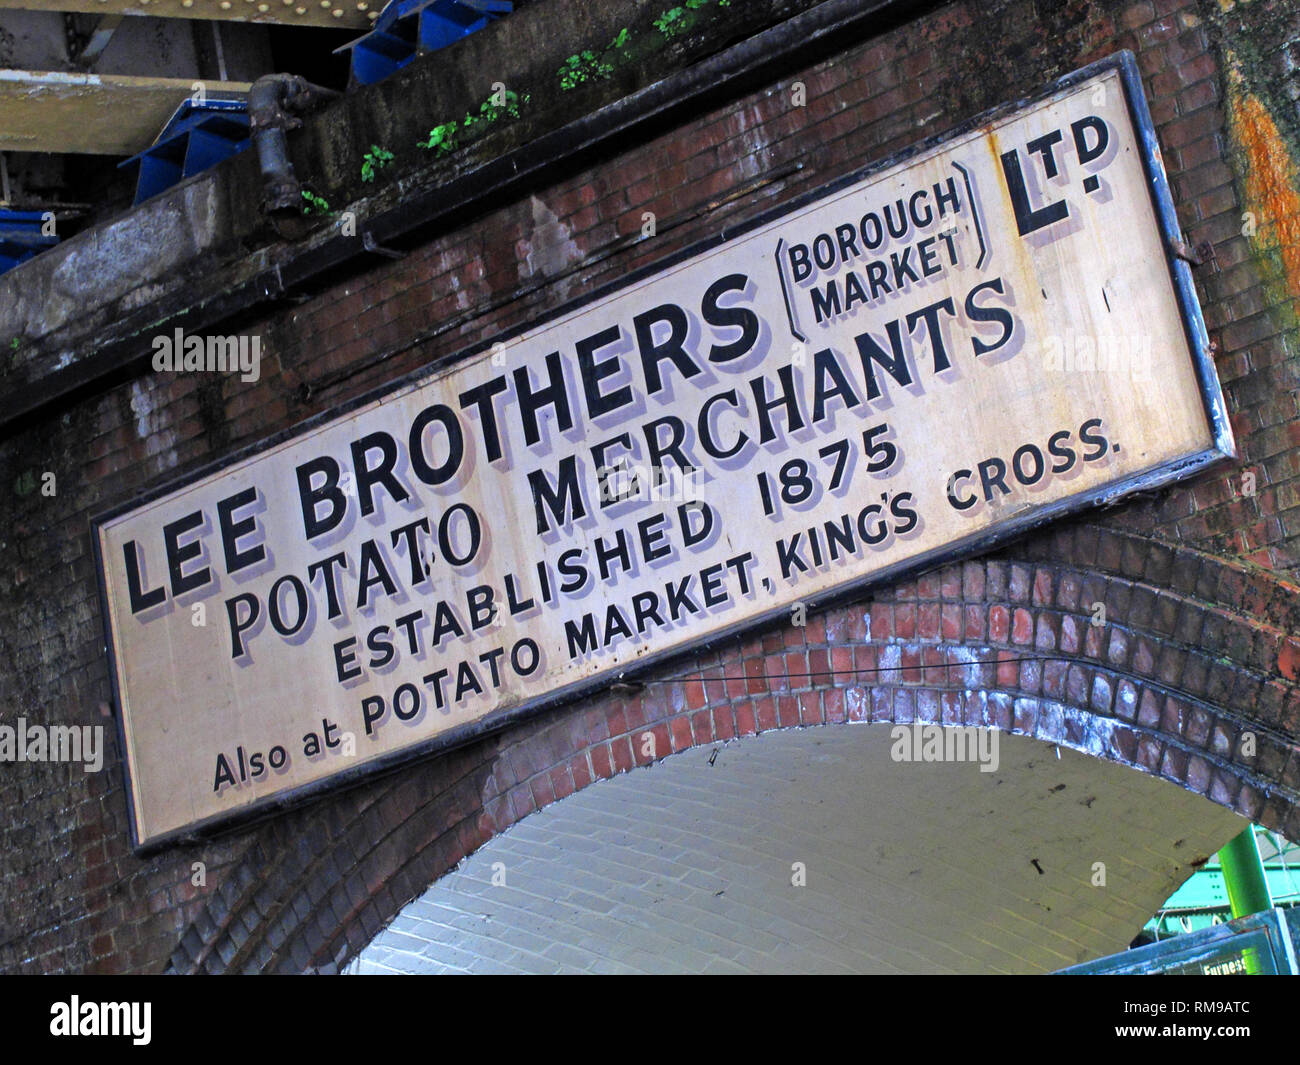 Lee Brothers, Borough Market, Potato Merchants Sign (fondé en 1875), Southwark, Londres, Angleterre du Sud-est, Royaume-Uni, Banque D'Images